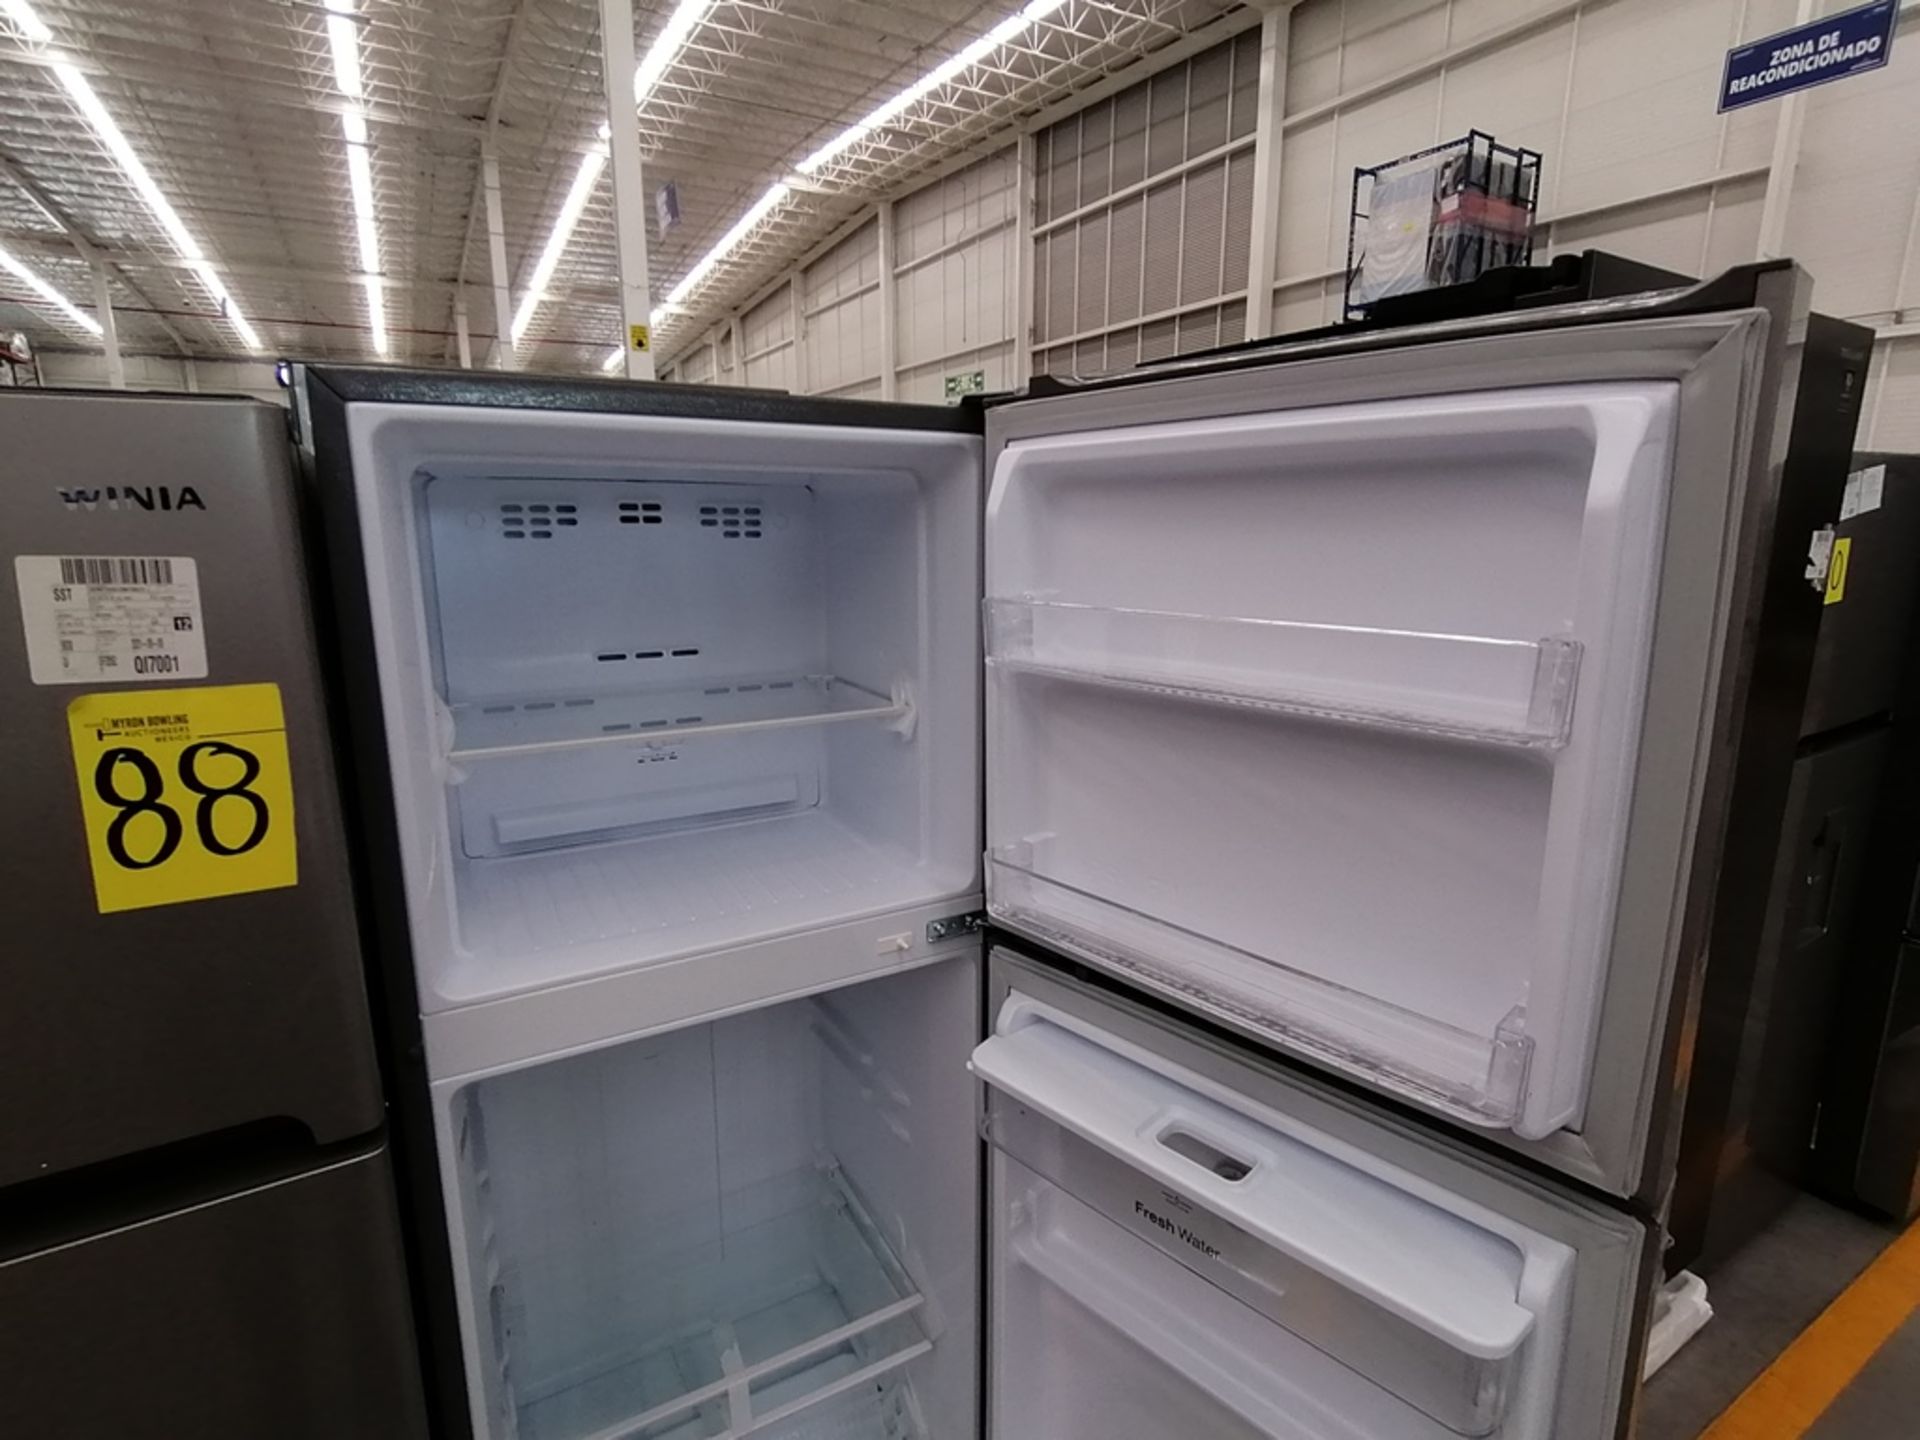 Lote de 2 refrigeradores incluye: 1 Refrigerador, Marca Winia, Modelo DFR25210GN, Serie MR219N11602 - Image 11 of 15